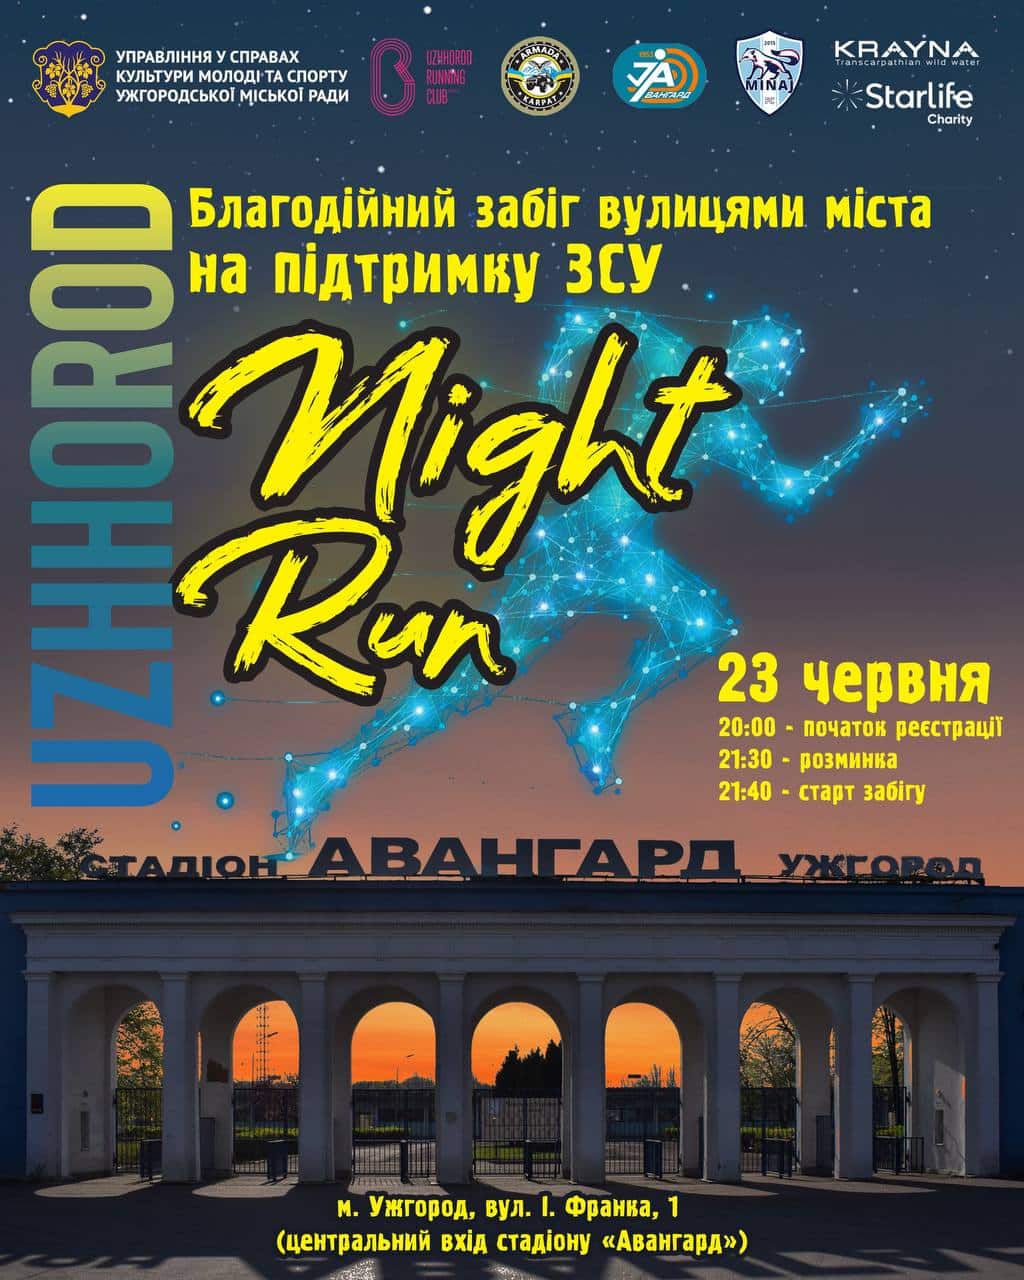 Благодійний забіг «Uzhhorod Night Run» відбудеться в Ужгороді 23 червня